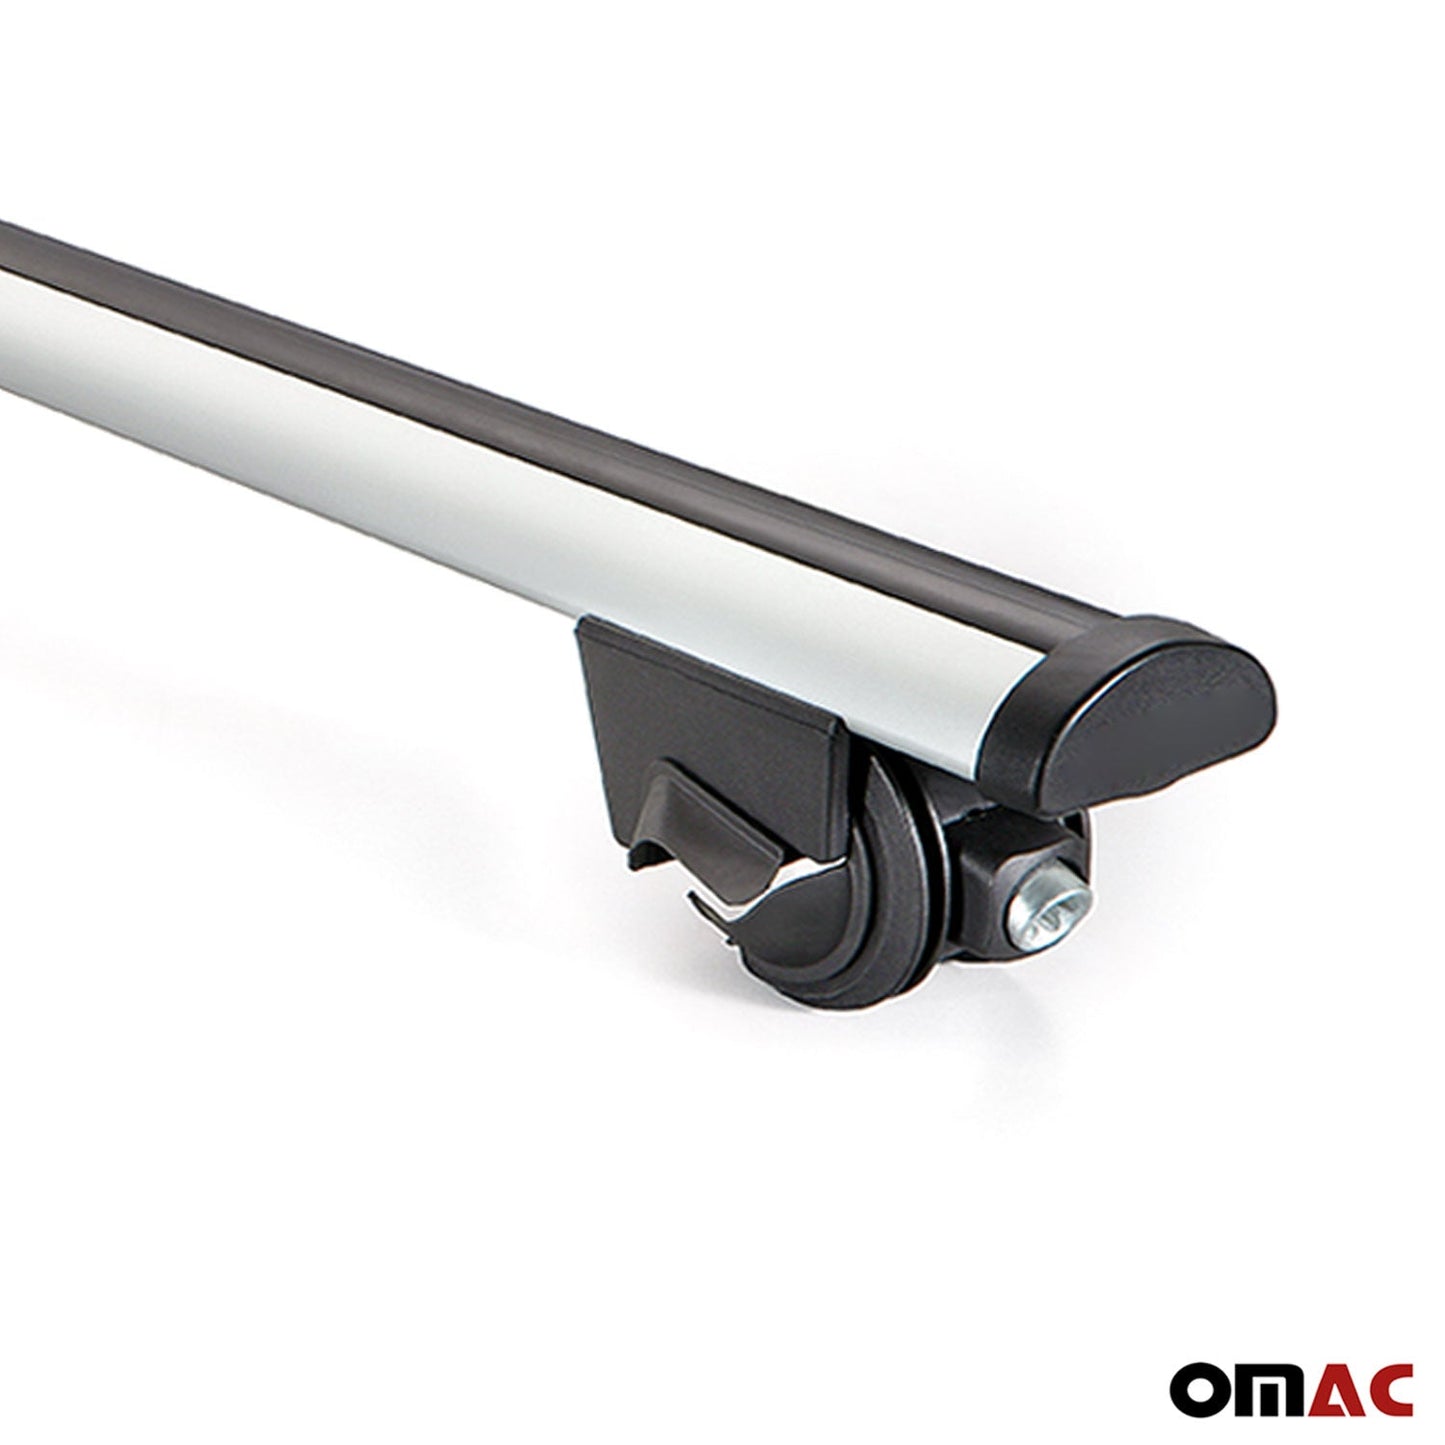 OMAC Roof Rack Cross Bars Lockable for Fiat Panda Cross 2003-2012 Aluminium Silver 2x U003885